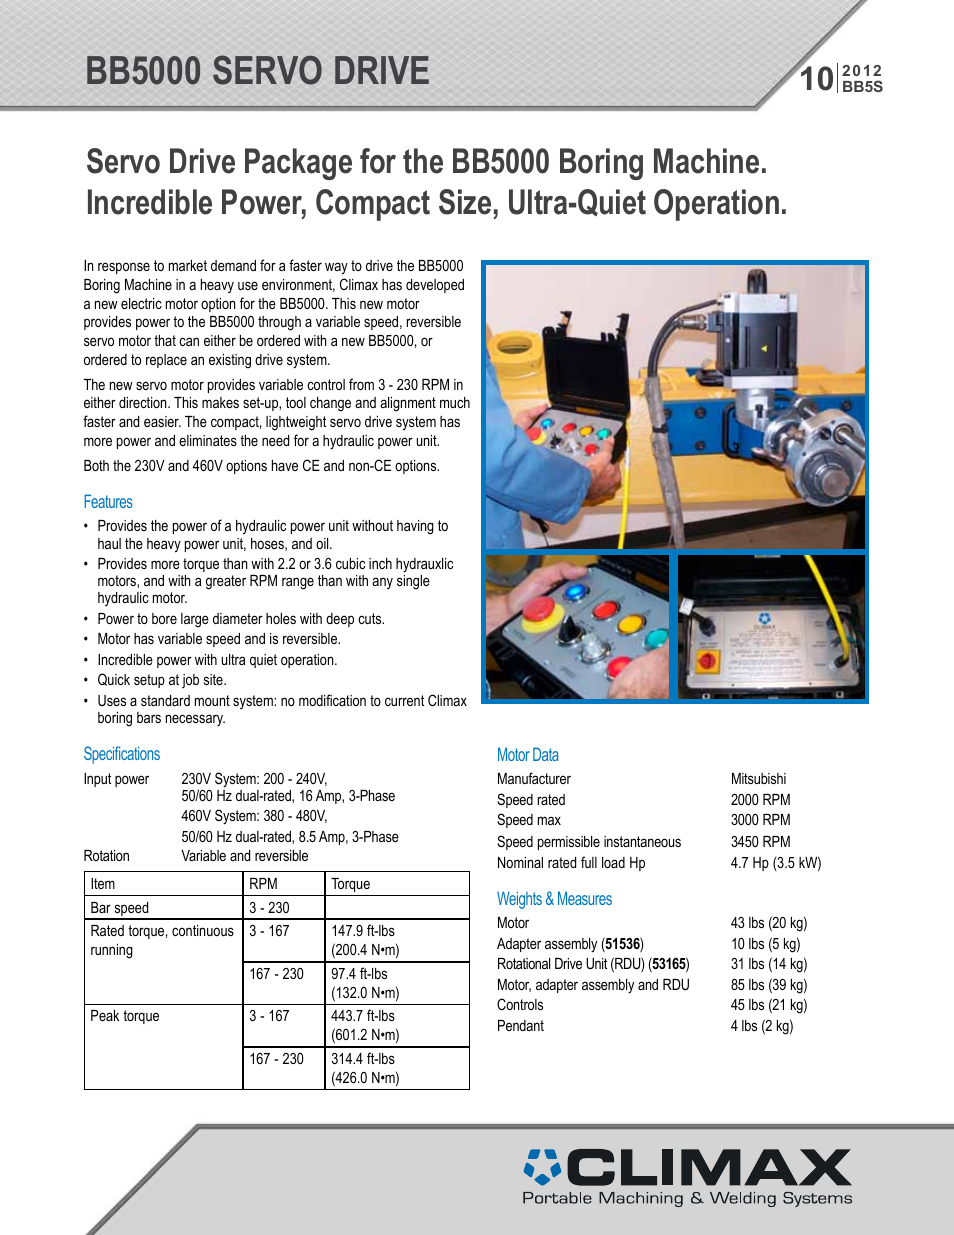 BB5000 Servo Drive Package